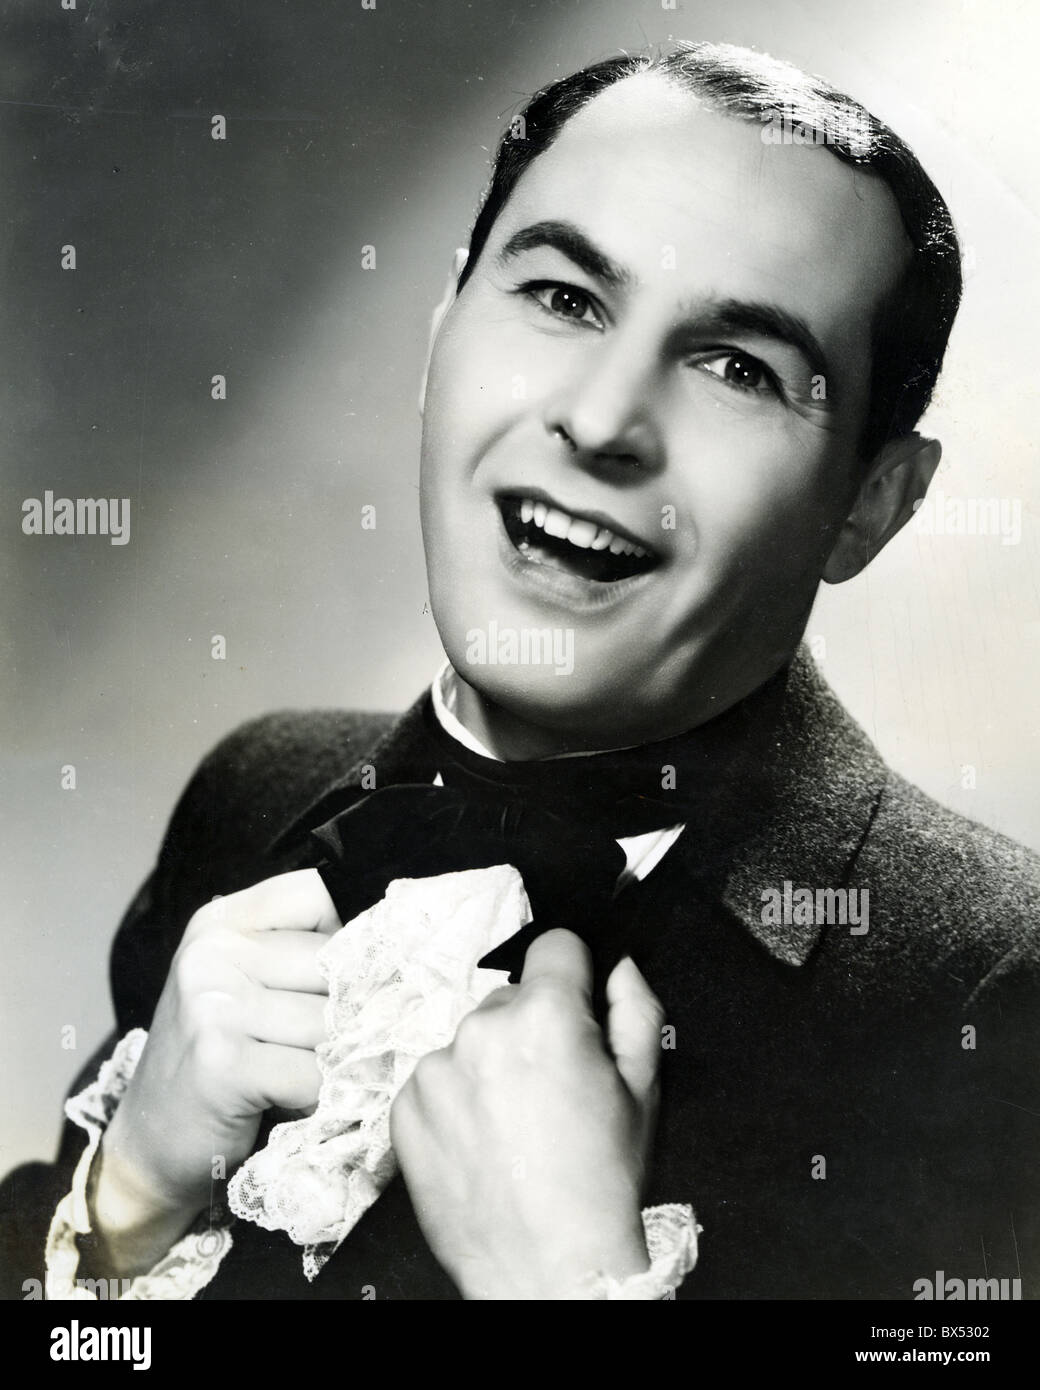 <b>JAN KIEPURA</b> (1902-1966) Polish singer and film actor Stock Photo - jan-kiepura-1902-1966-polish-singer-and-film-actor-BX5302